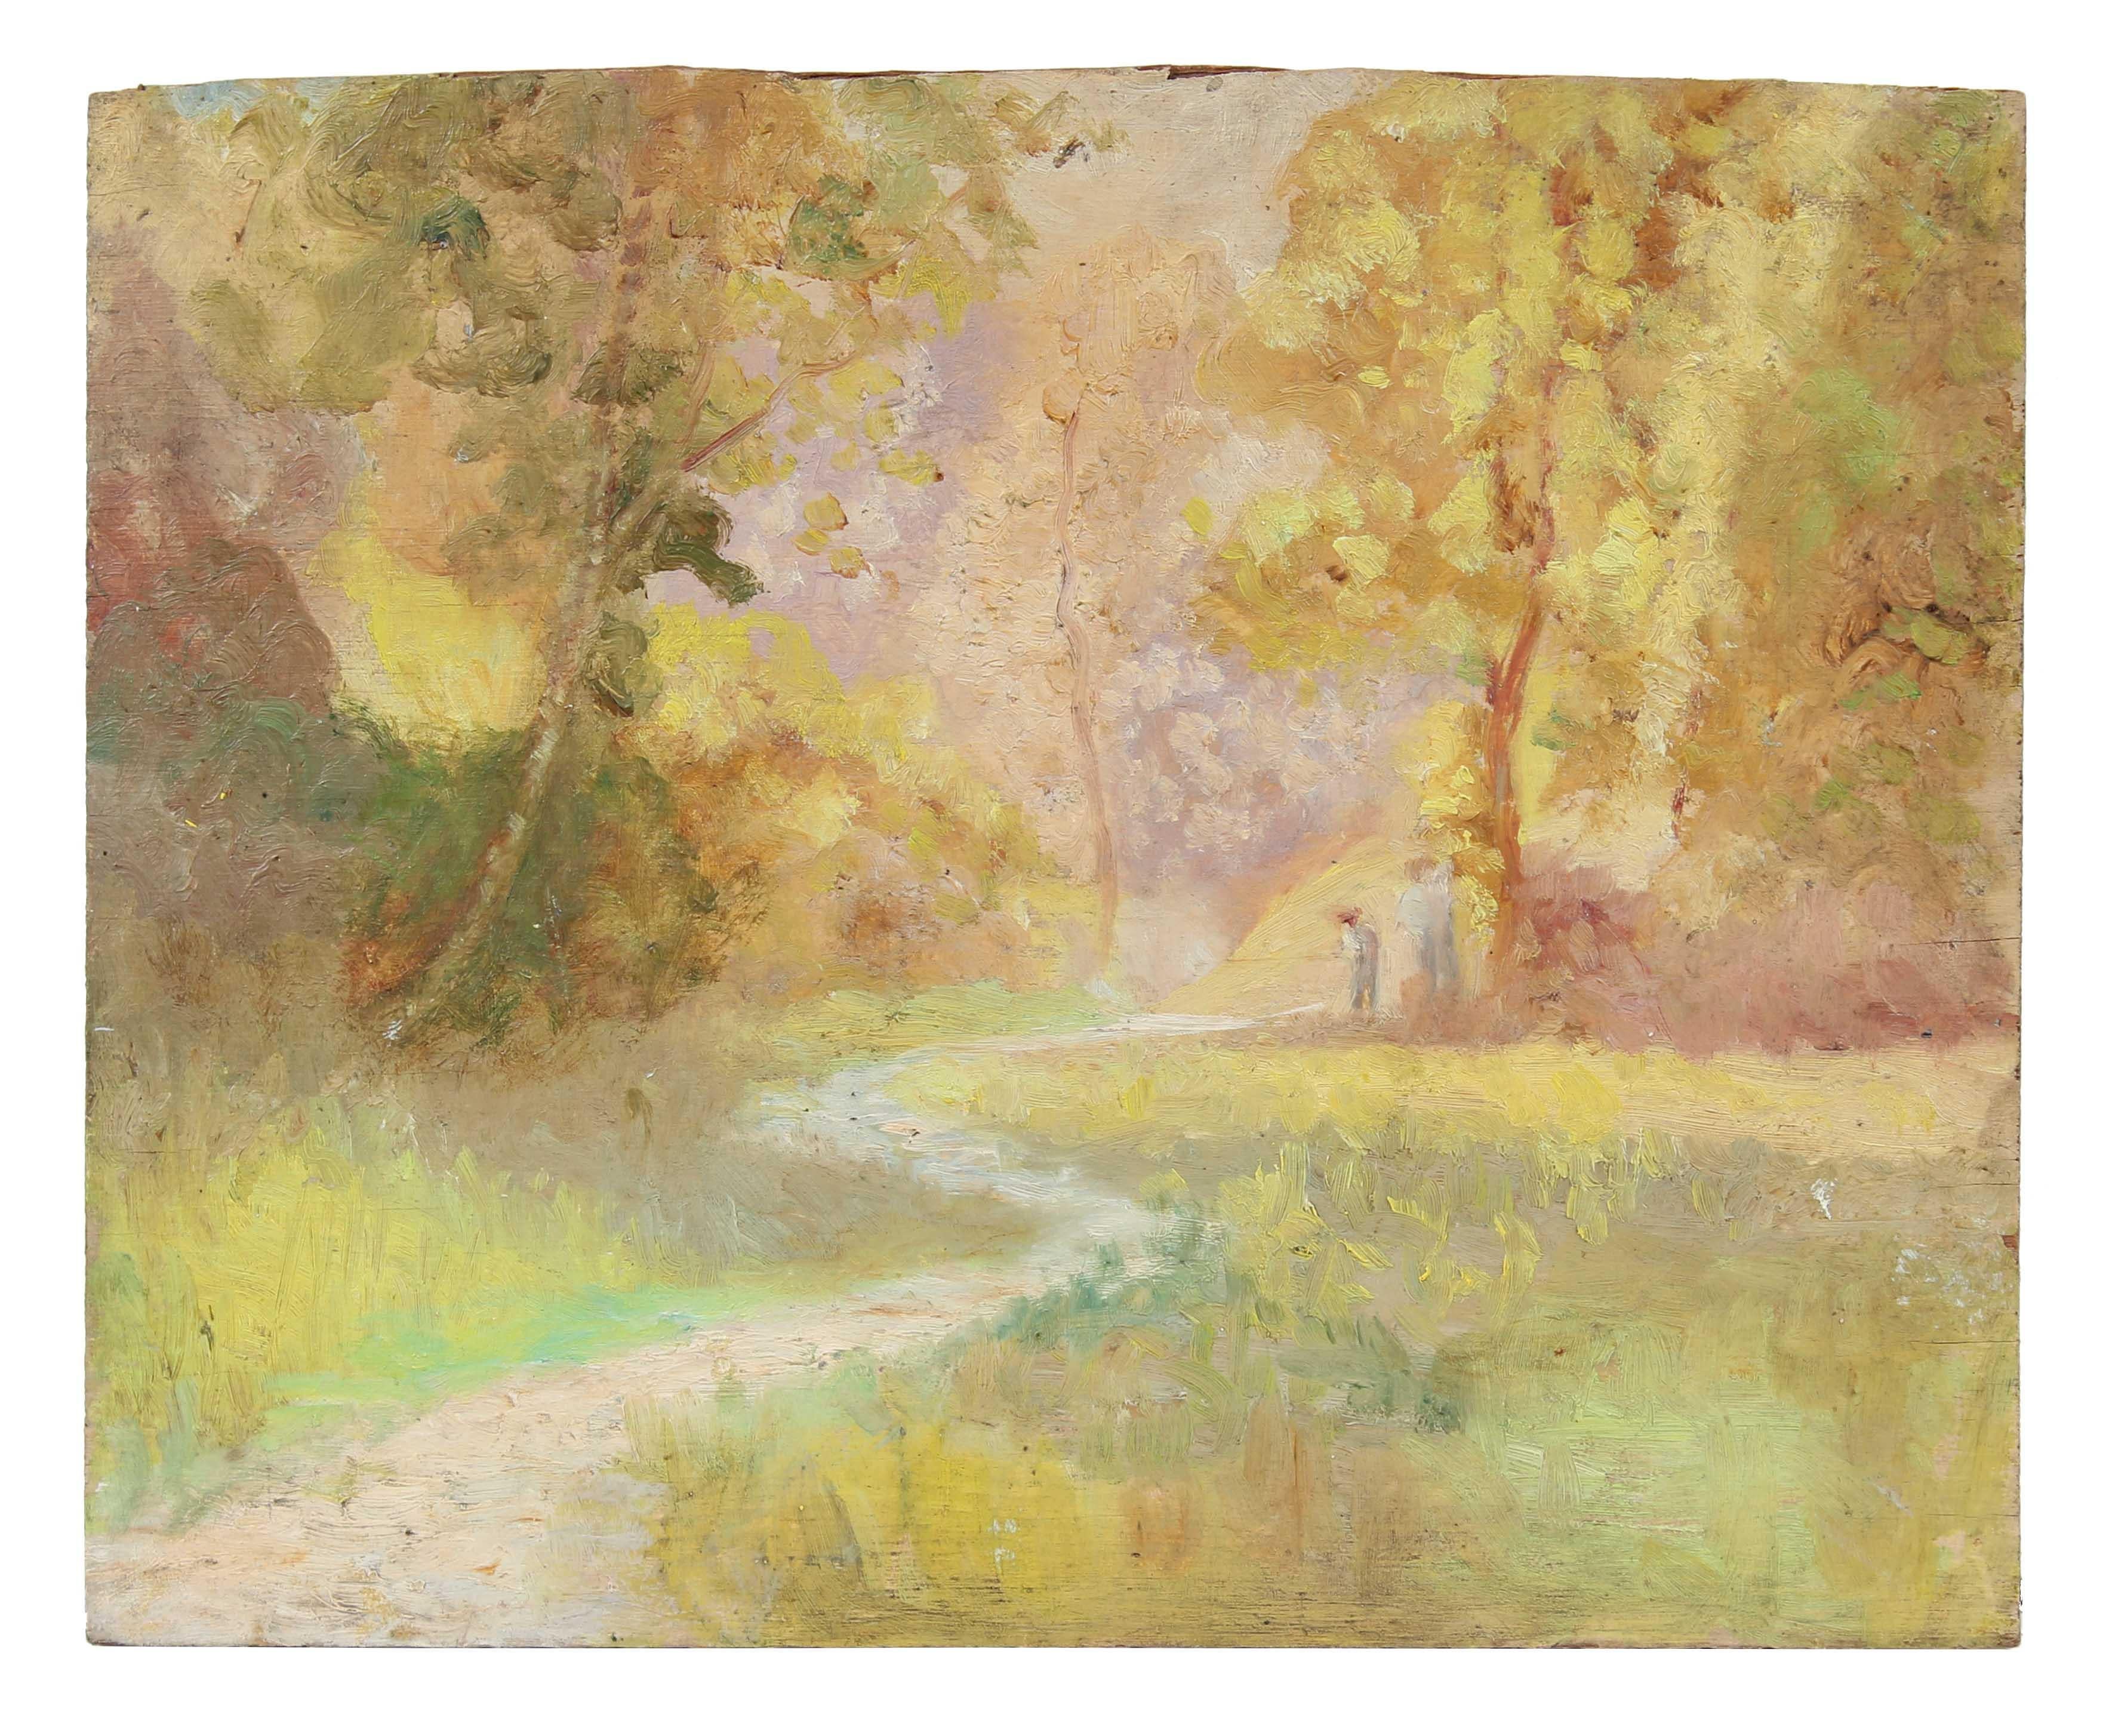 Duncan Davidson Landscape Painting - Impressionist Sunset Landscape, Oil Painting, Circa 1900-1930s